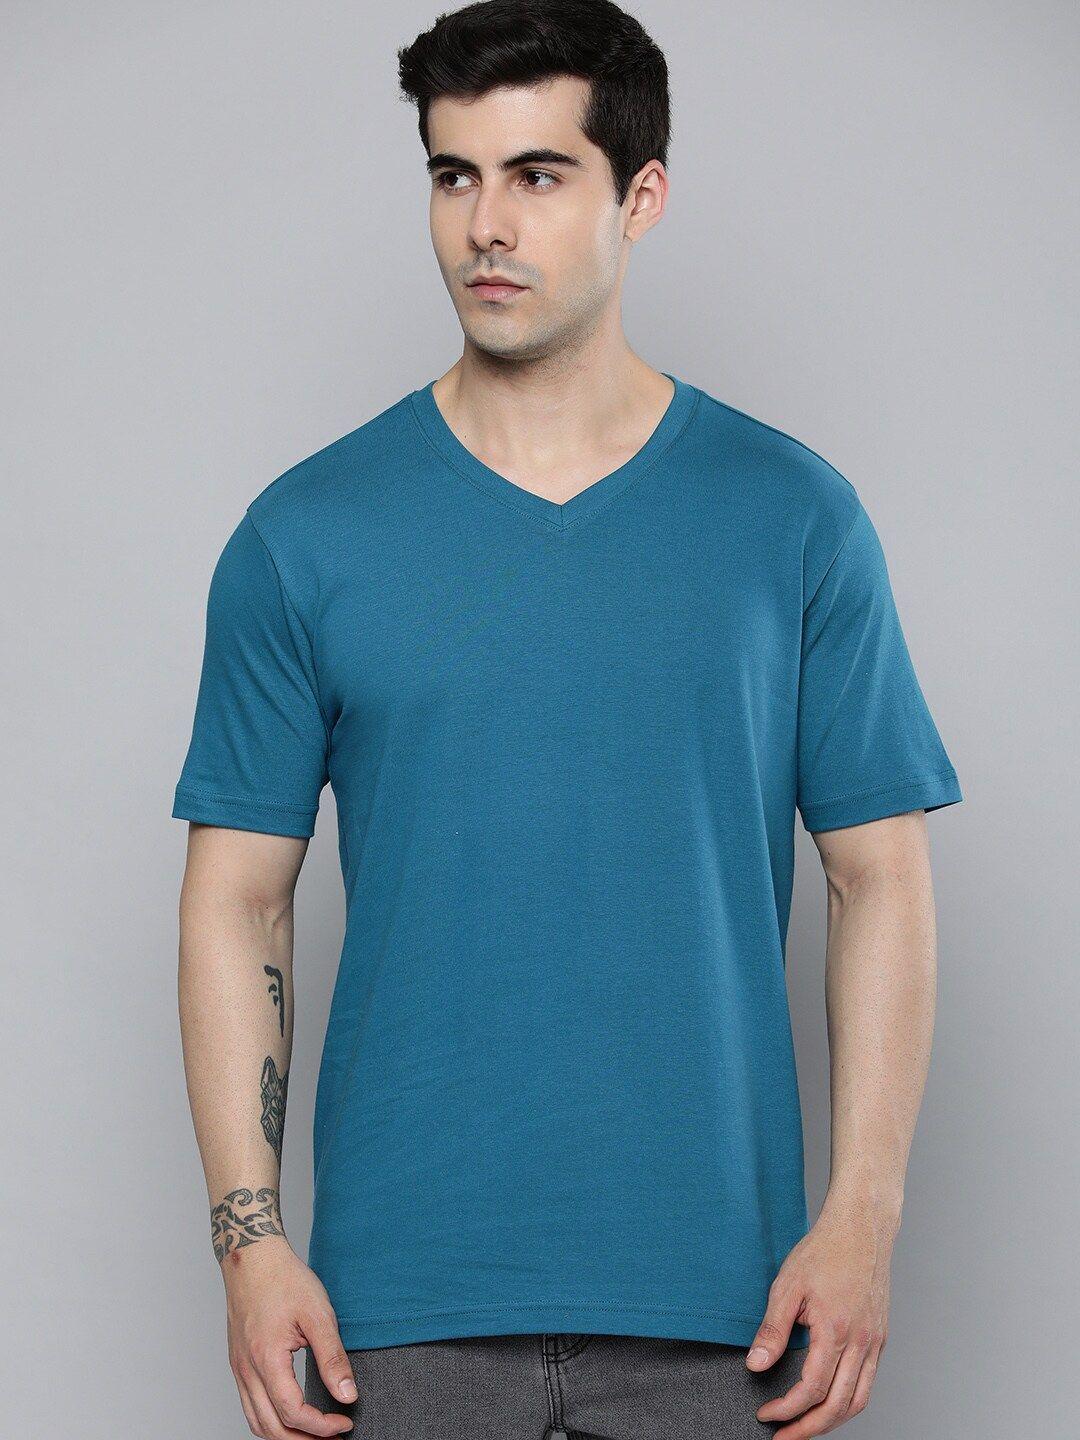 mast & harbour teal blue v-neck short sleeves cotton t-shirt